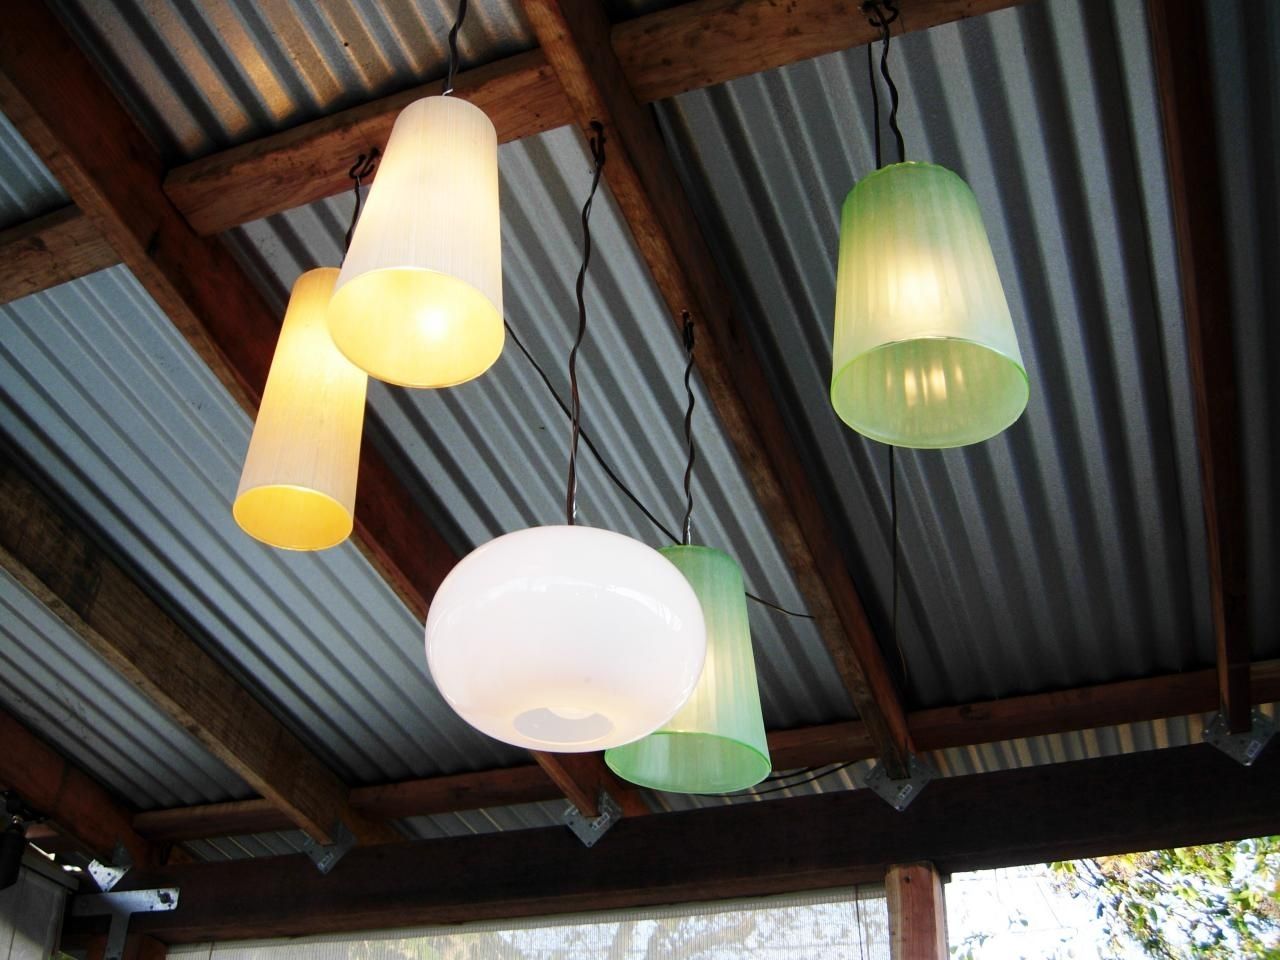 How To Make Outdoor Chandeliers | How Tos | Diy Regarding Homemade Outdoor Hanging Lights (View 14 of 15)